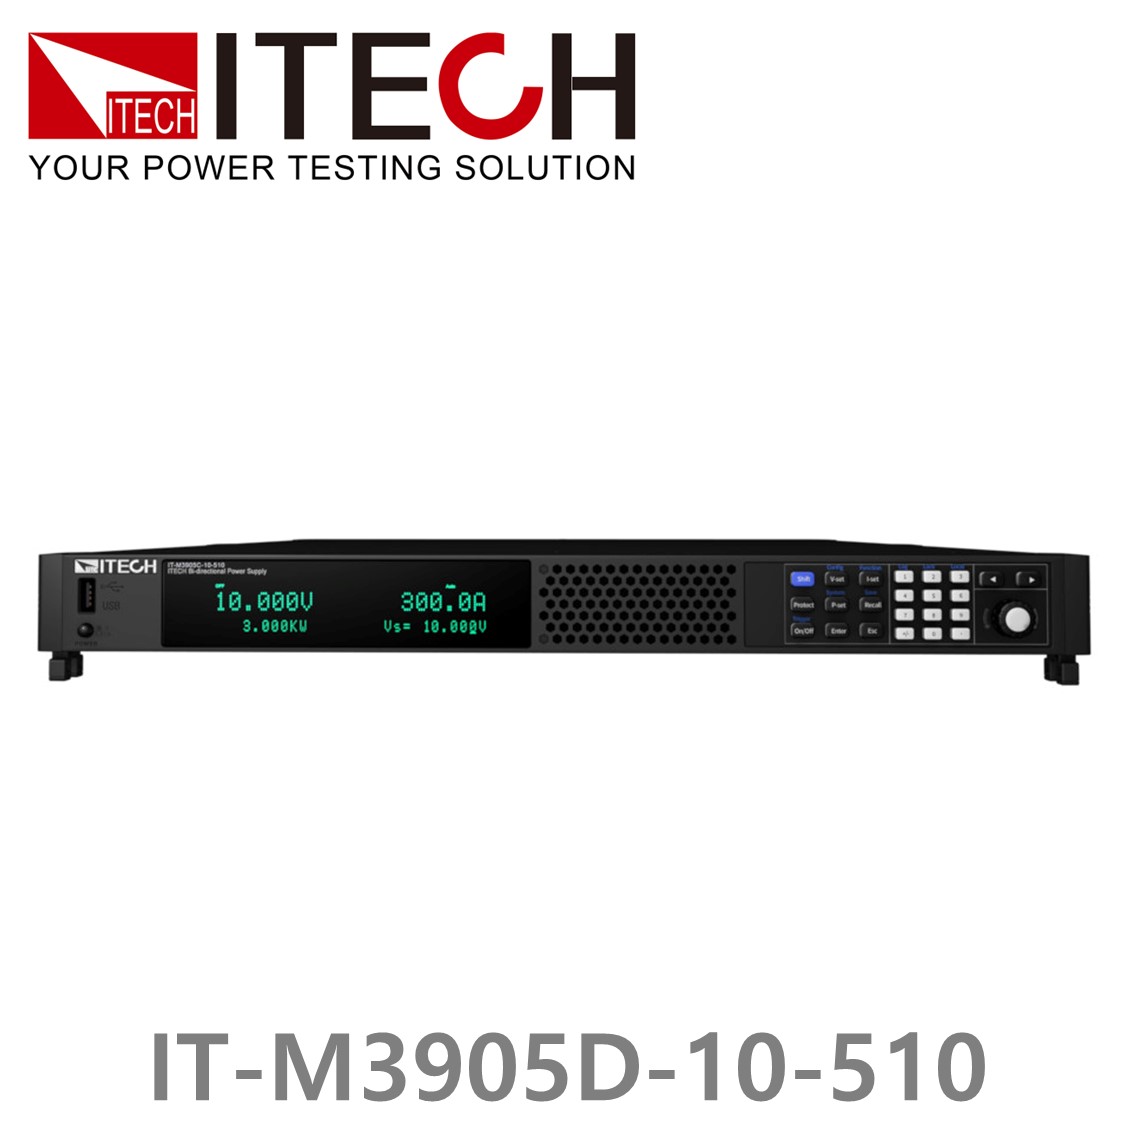 [ ITECH ] IT-M3905D-10-510 양방향 프로그래머블 DC전원공급기, DC파워서플라이